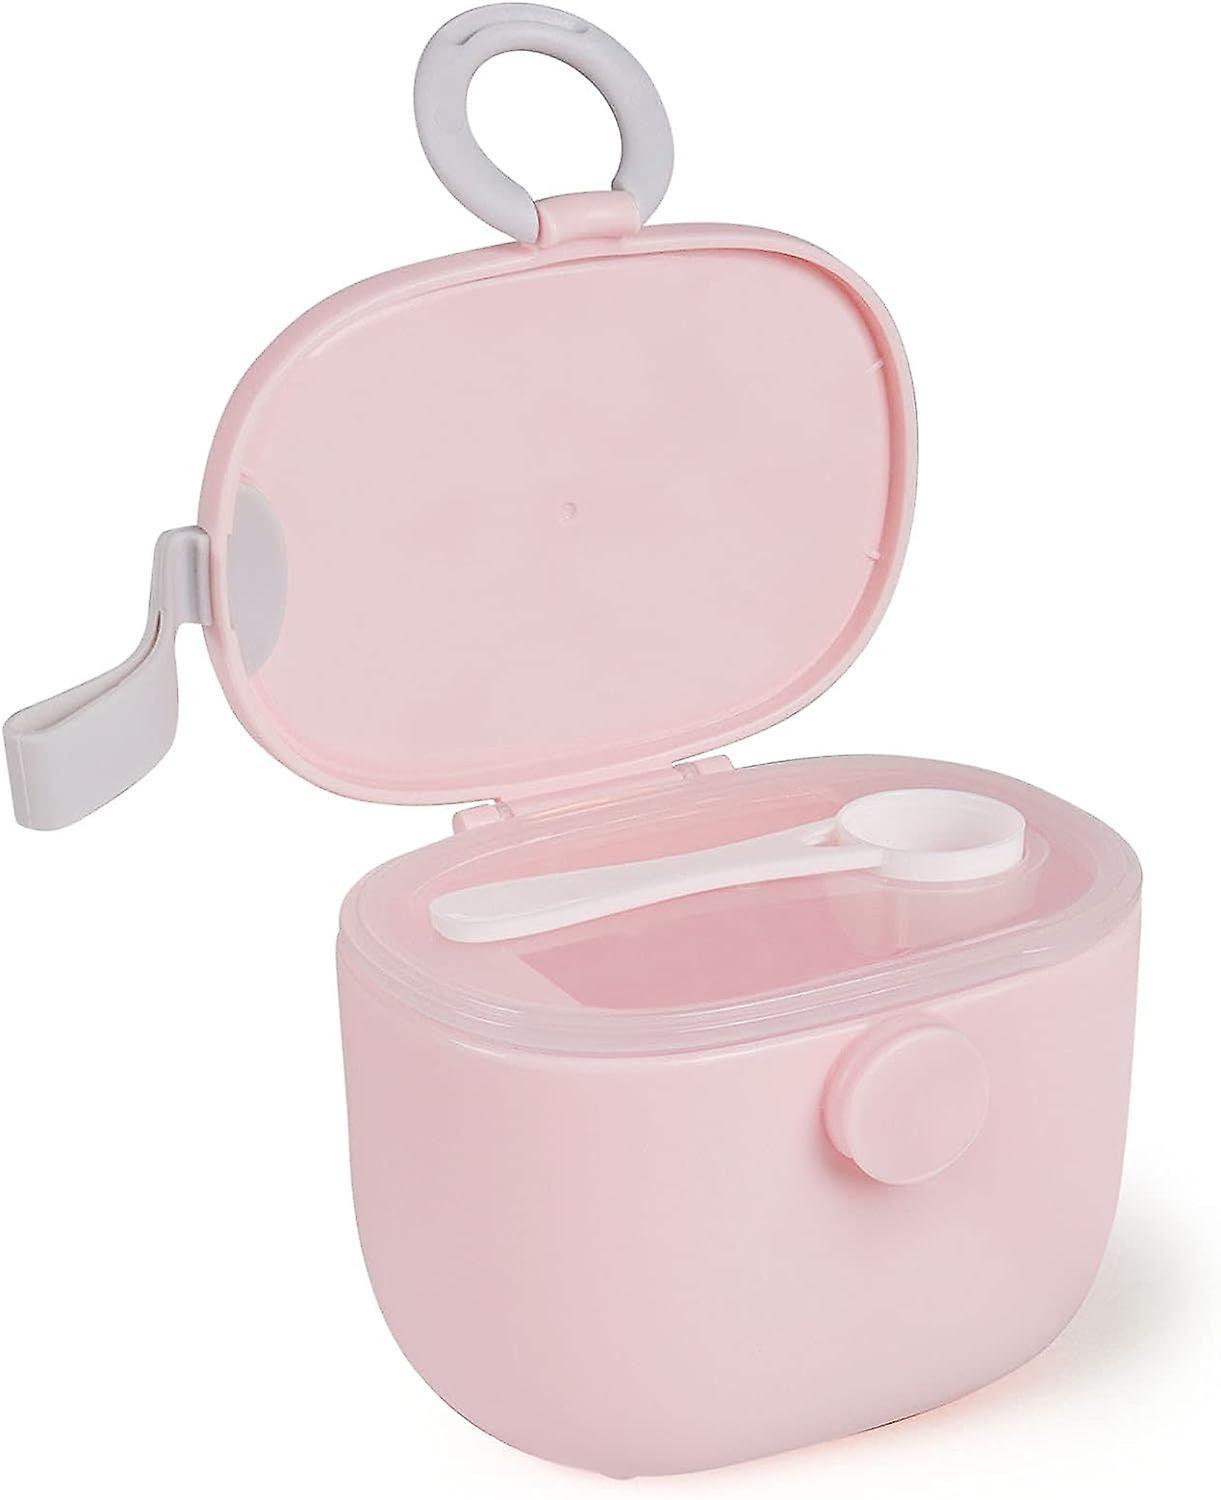 Artis (rose) Pot de lait en poudre pour bébé, distributeur de lait